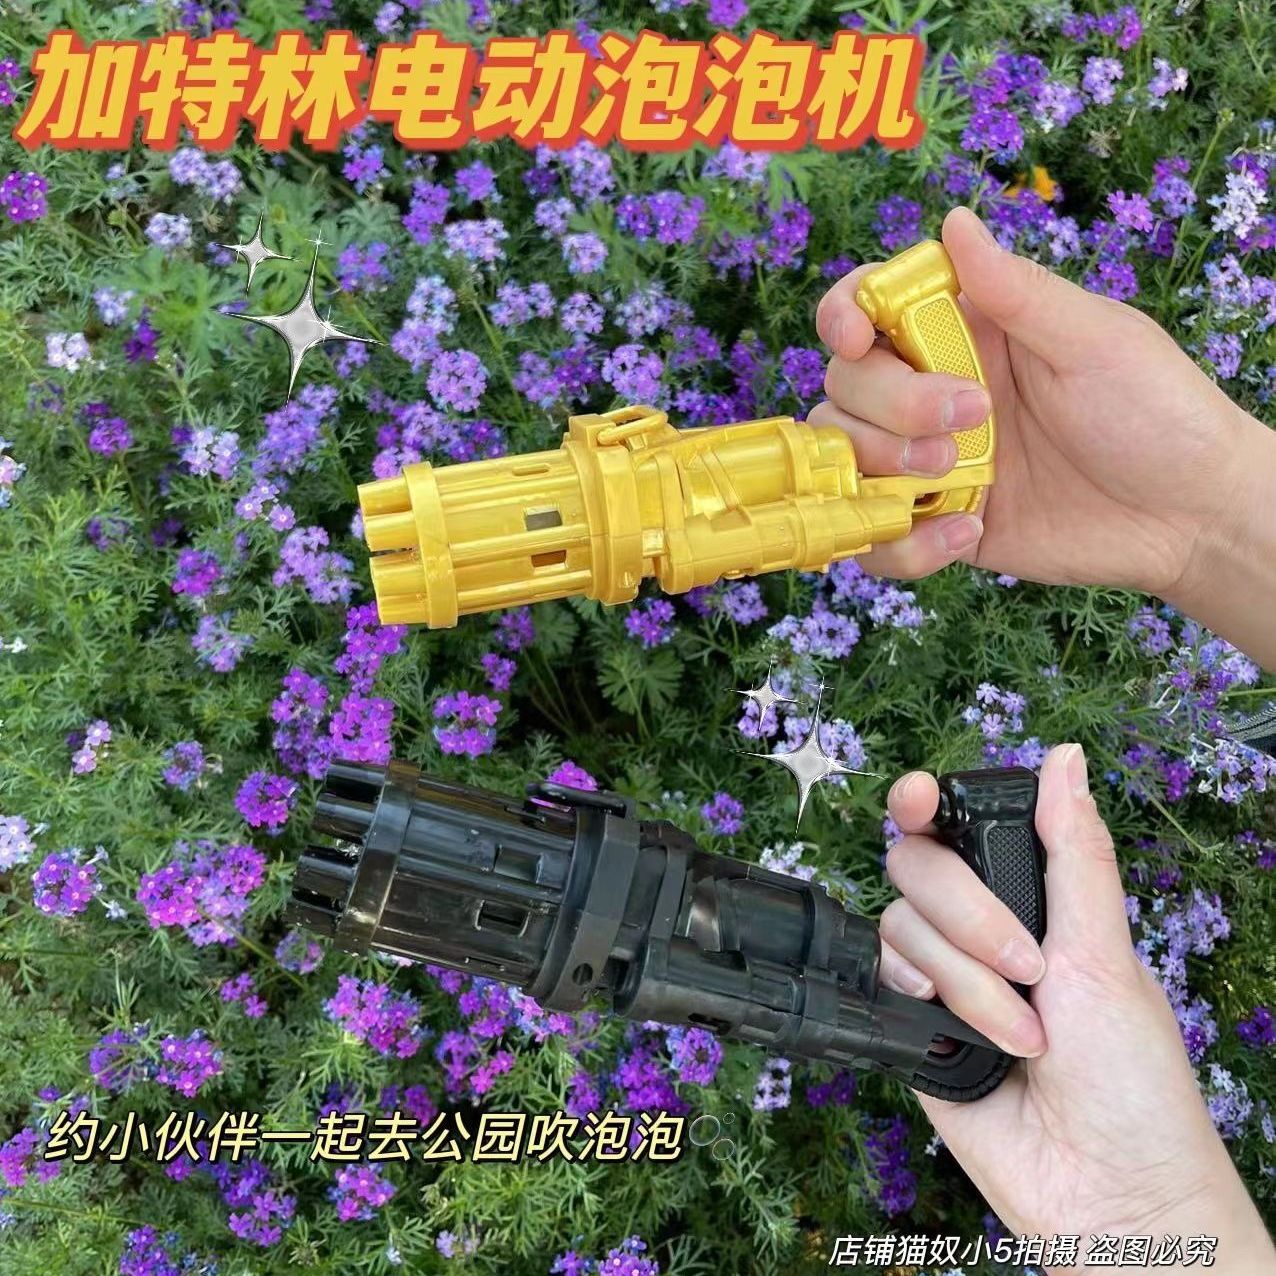 小红书推荐网红加特林泡泡枪儿童娱乐手持电动吹泡泡机全自动玩具